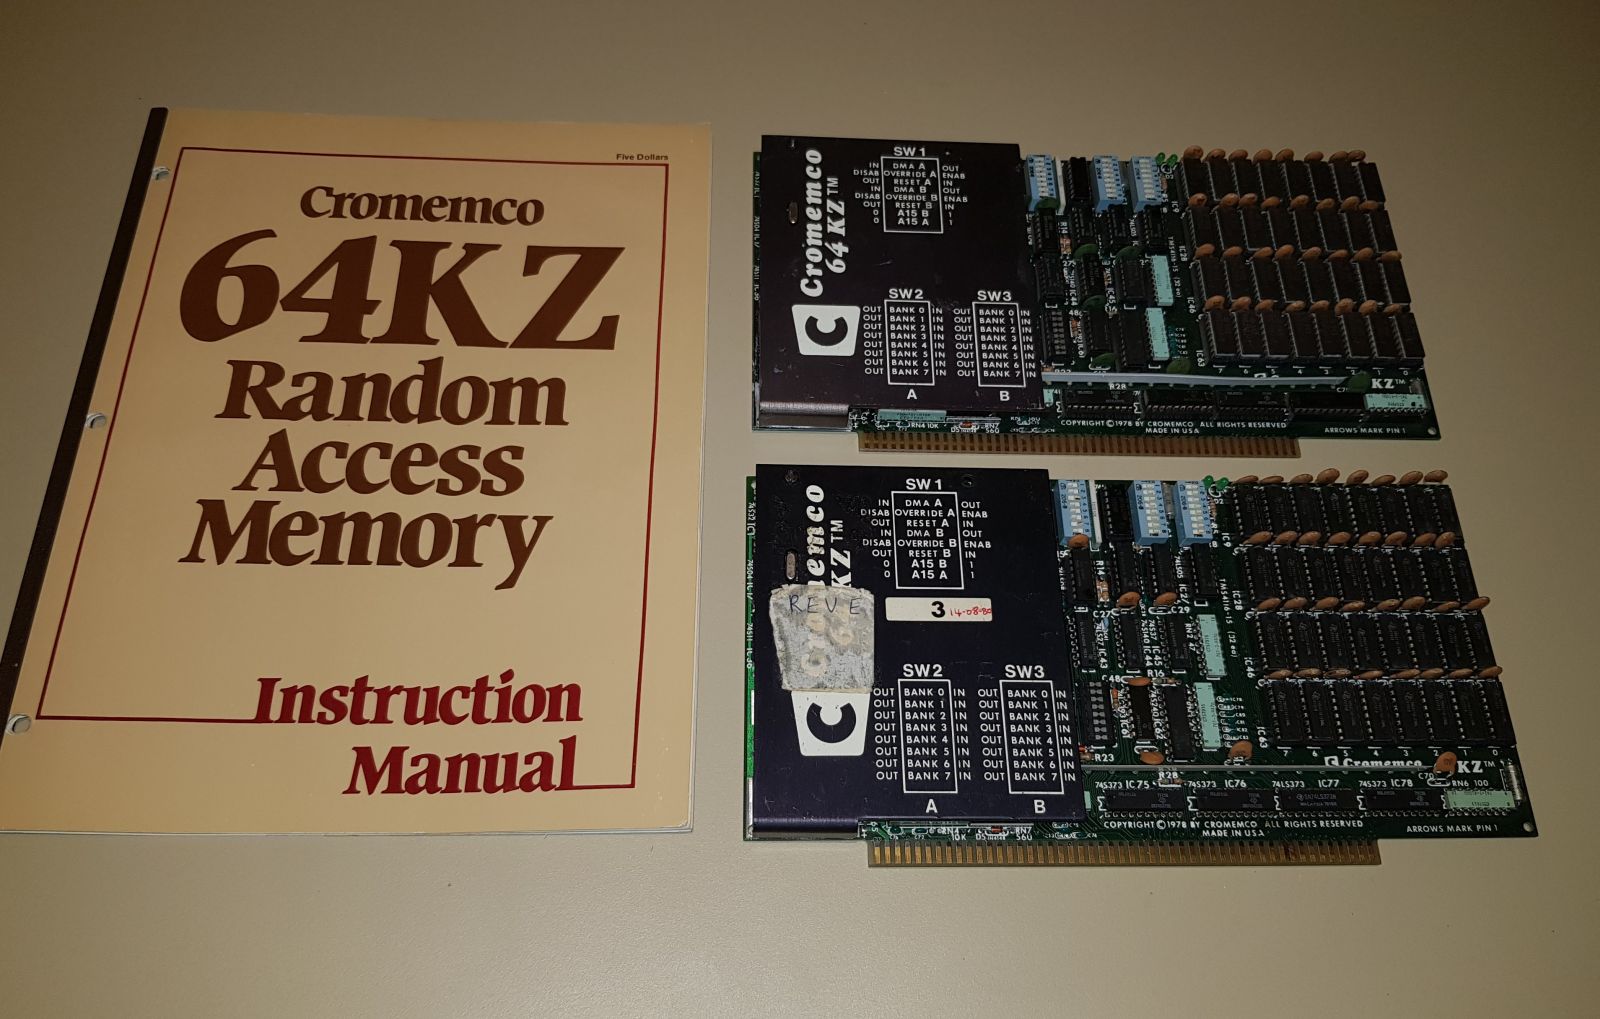 Two Cromemco 64KZ Dynamic Memory